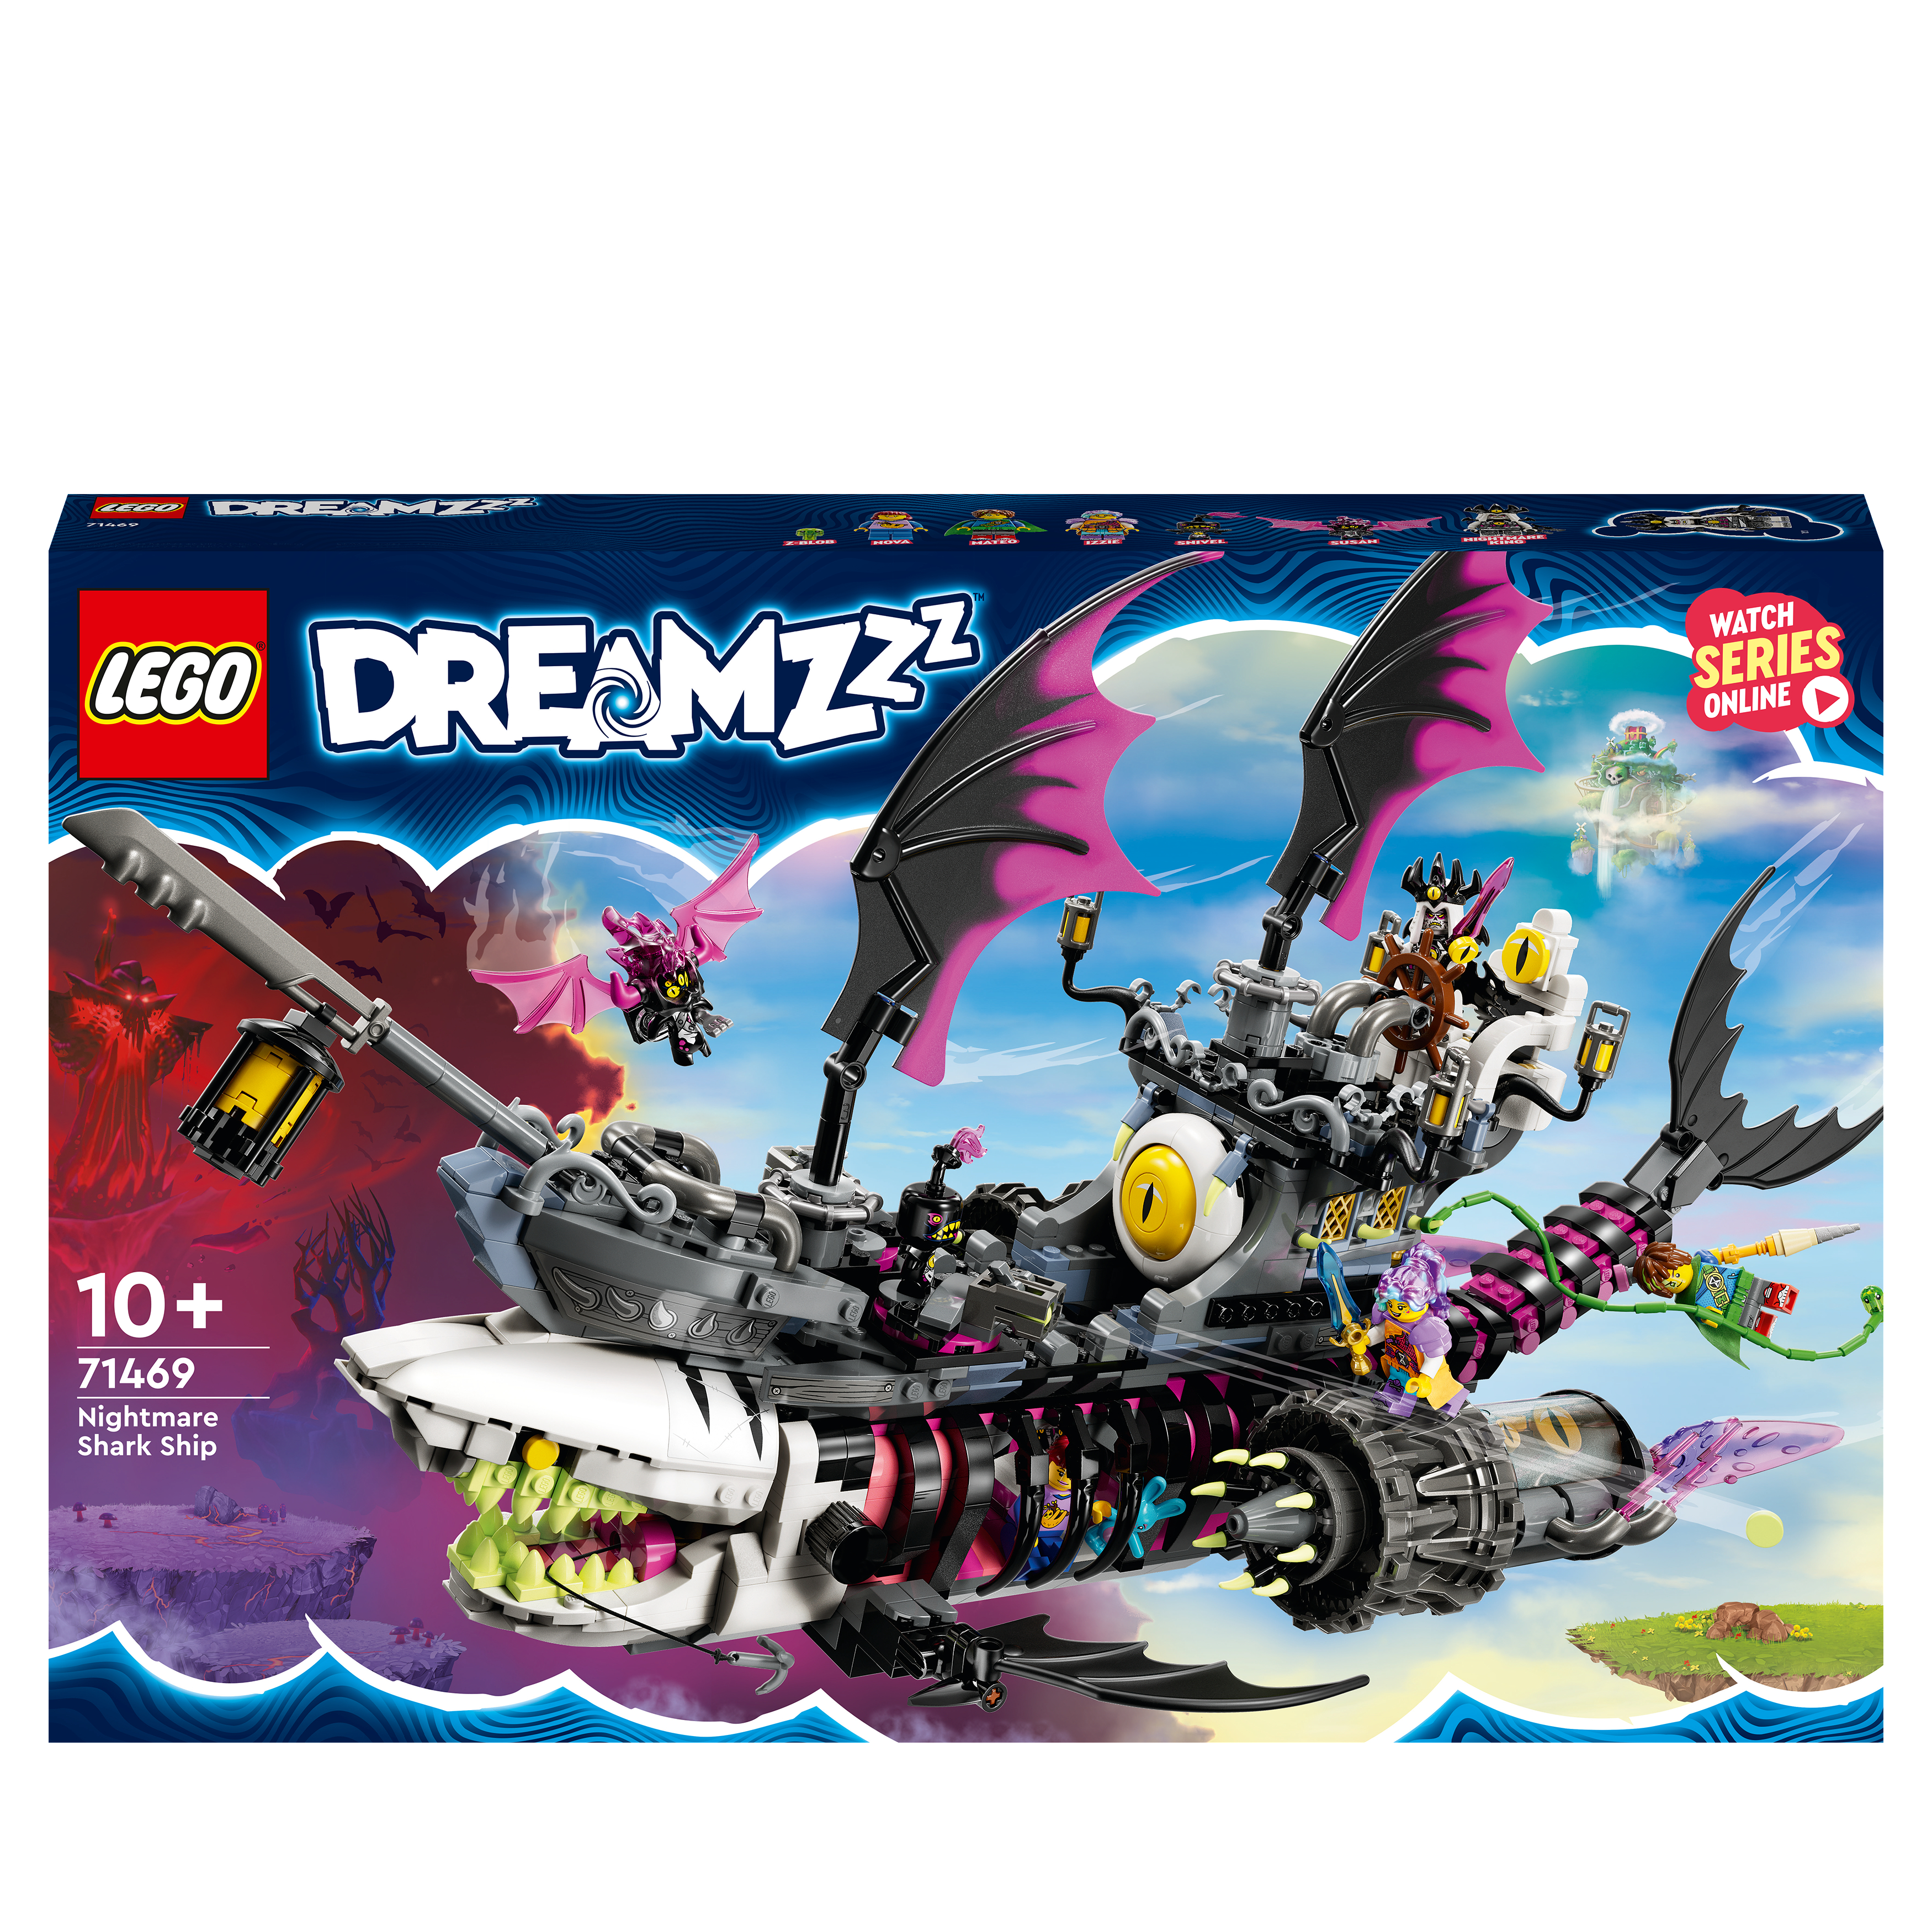 LEGO DREAMZzz Mehrfarbig Bausatz, 71469 Albtraum-Haischiff